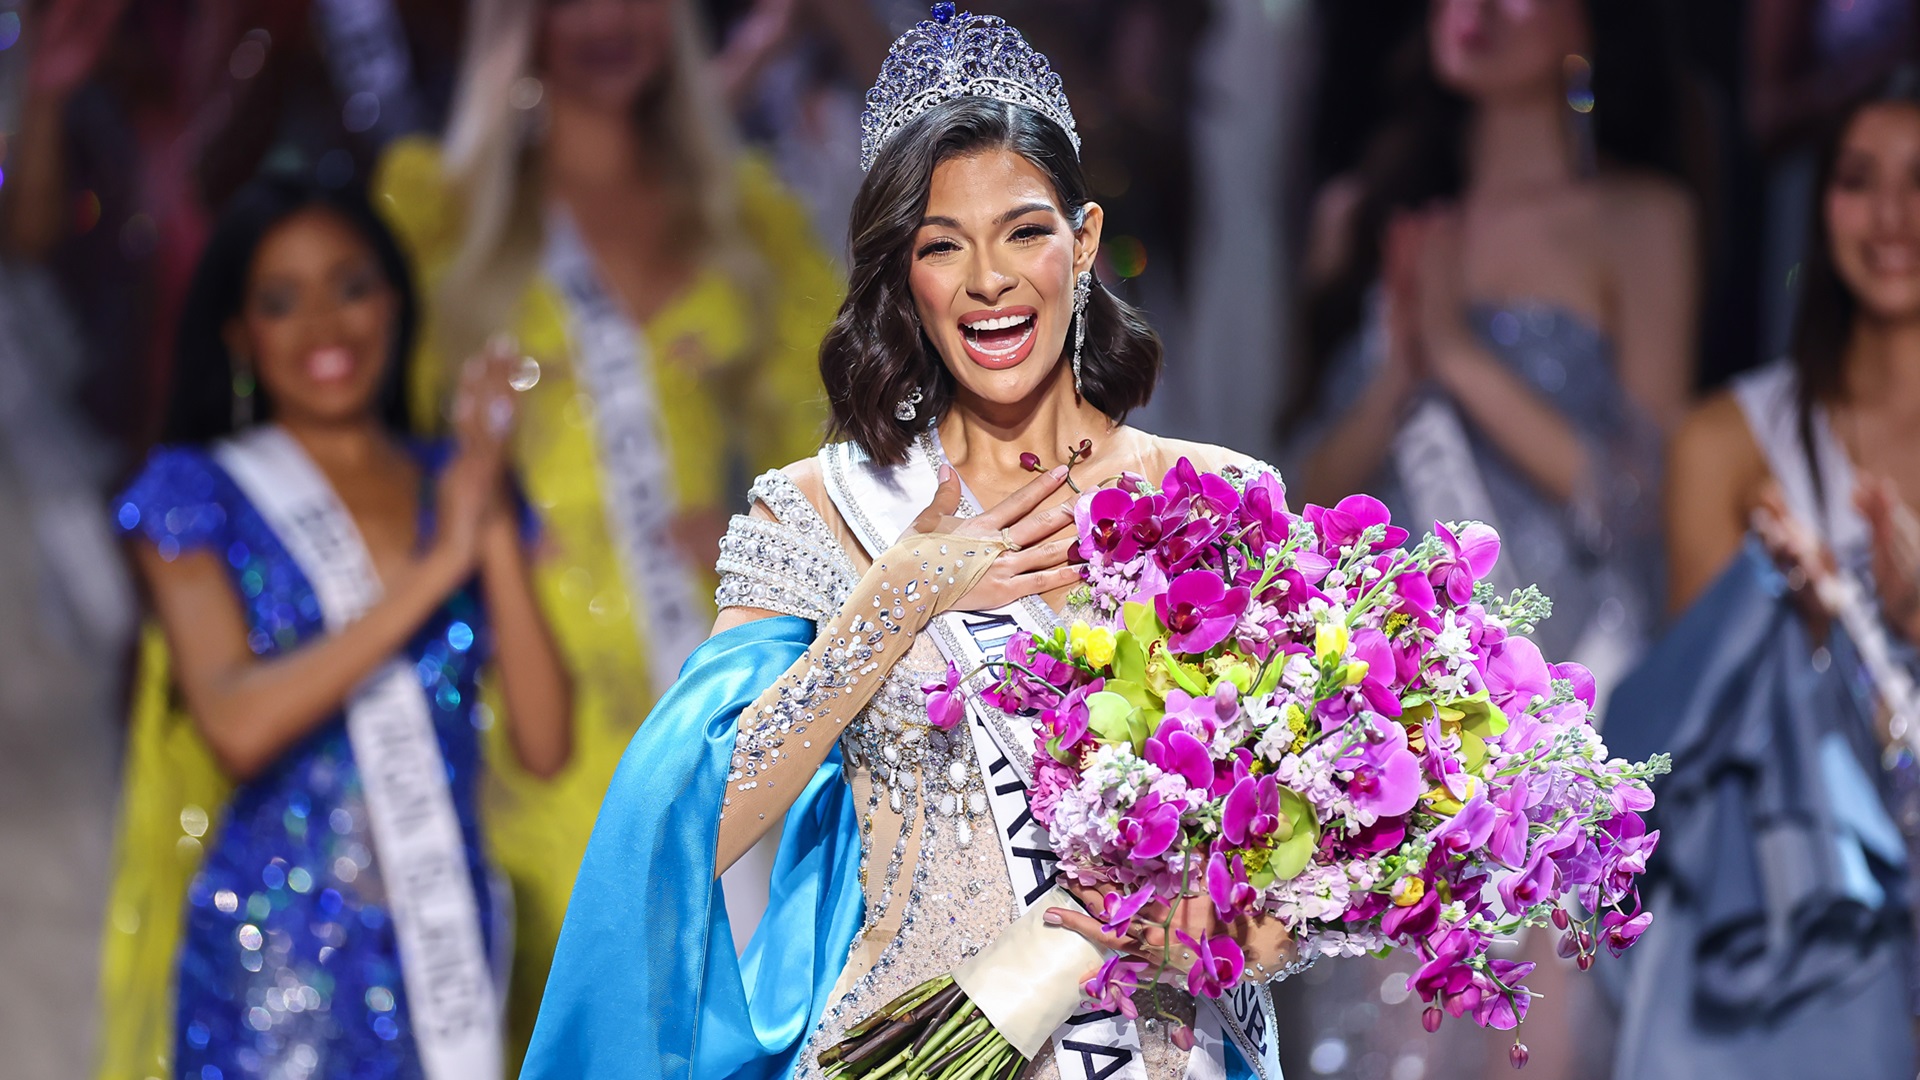 Voici Sheynnis Palacios, lauréate de Miss Univers 2023 